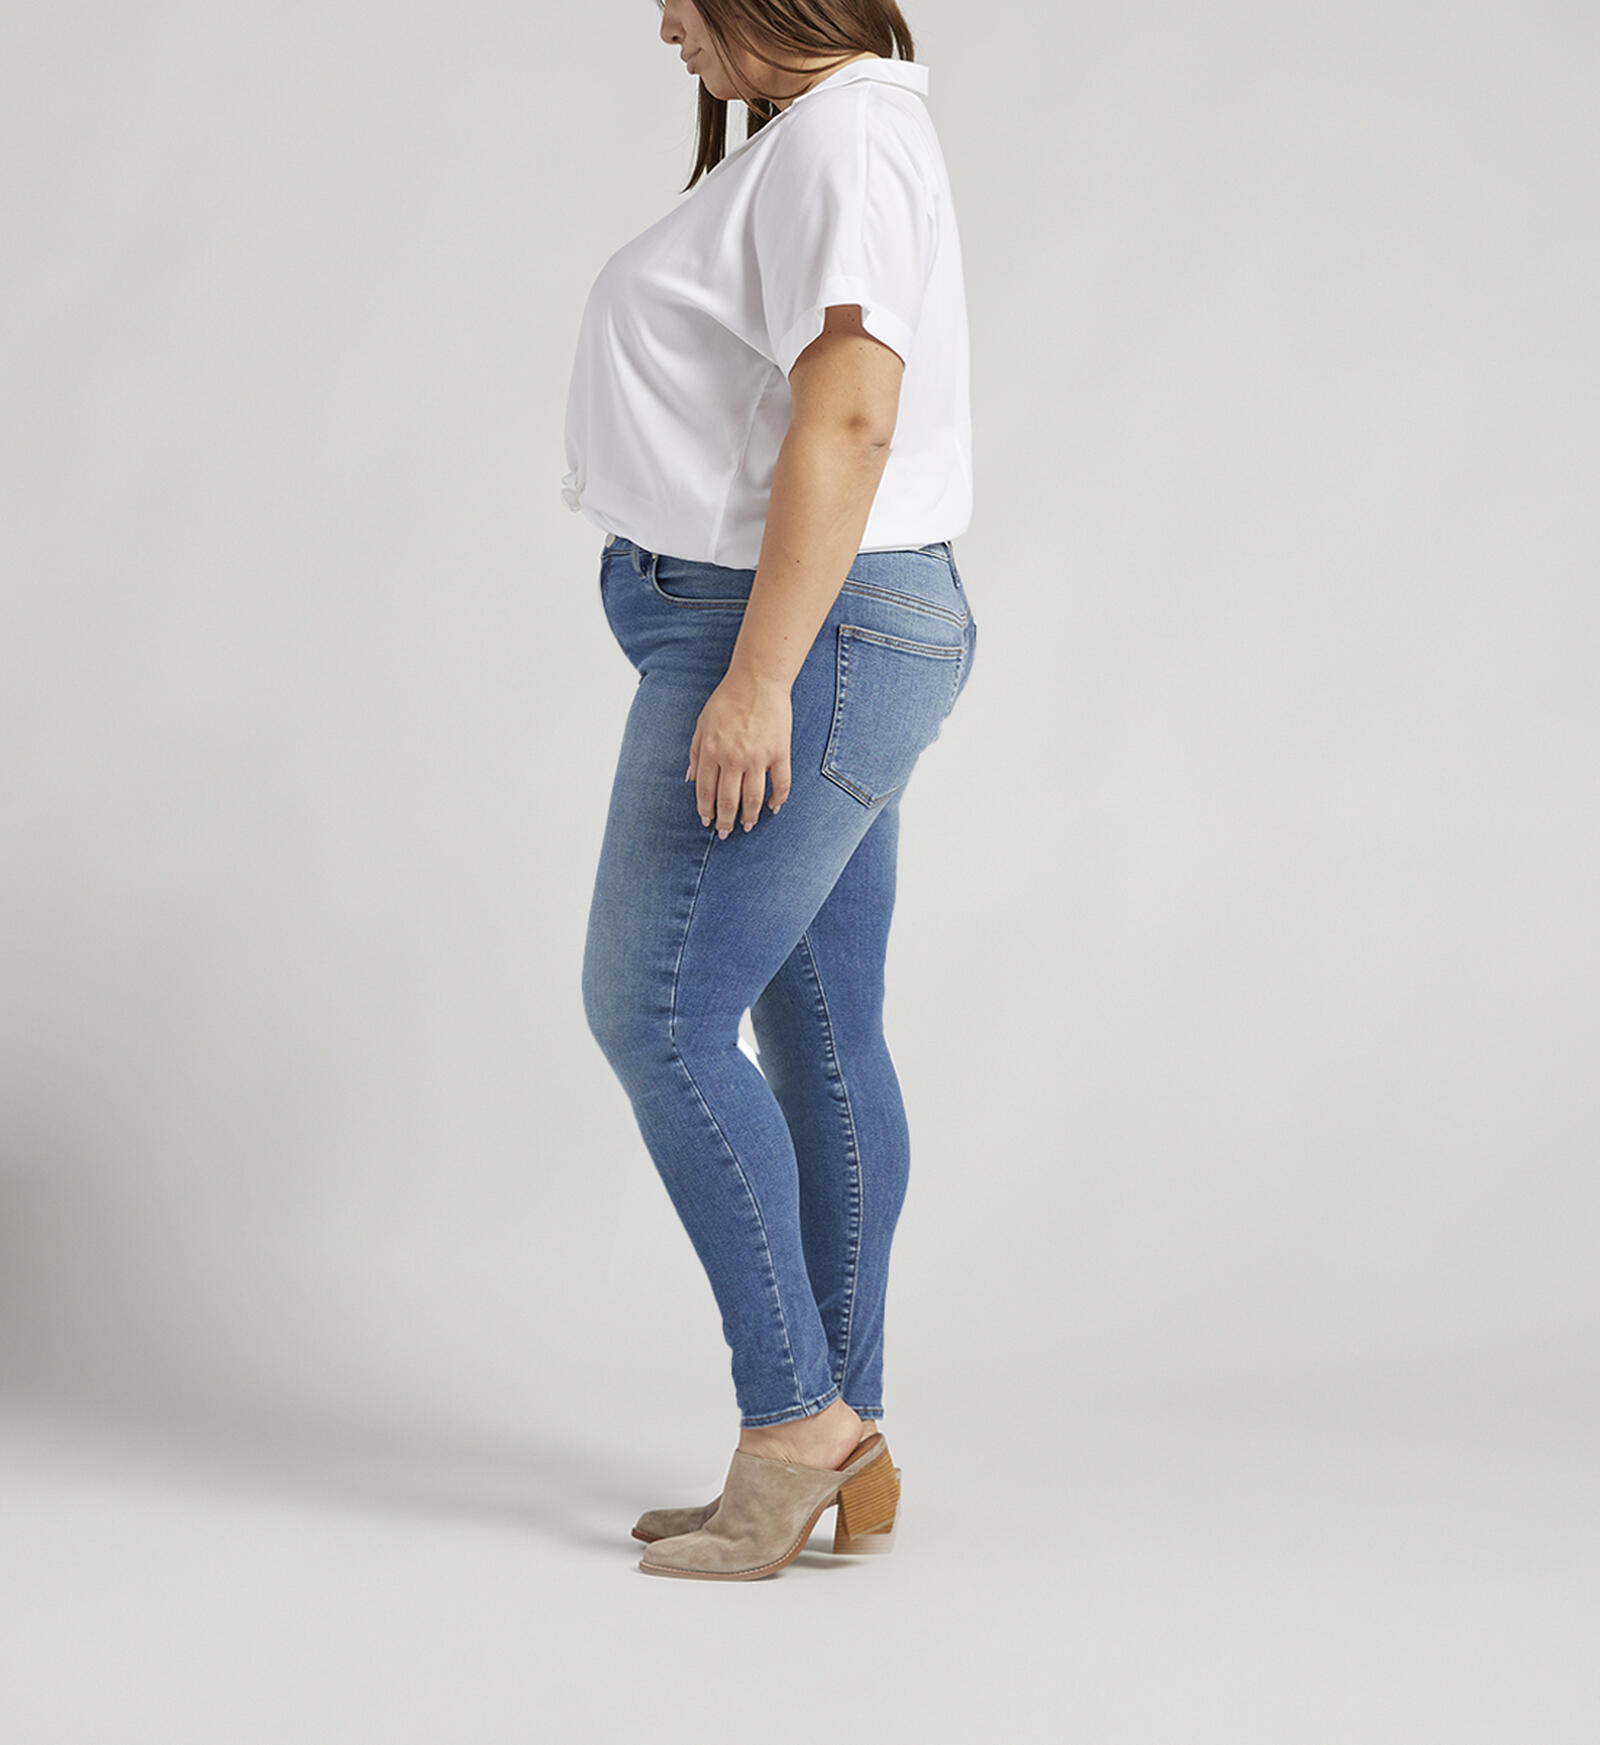 Buy Women's Skinny Shape Enhancer Jeans Online